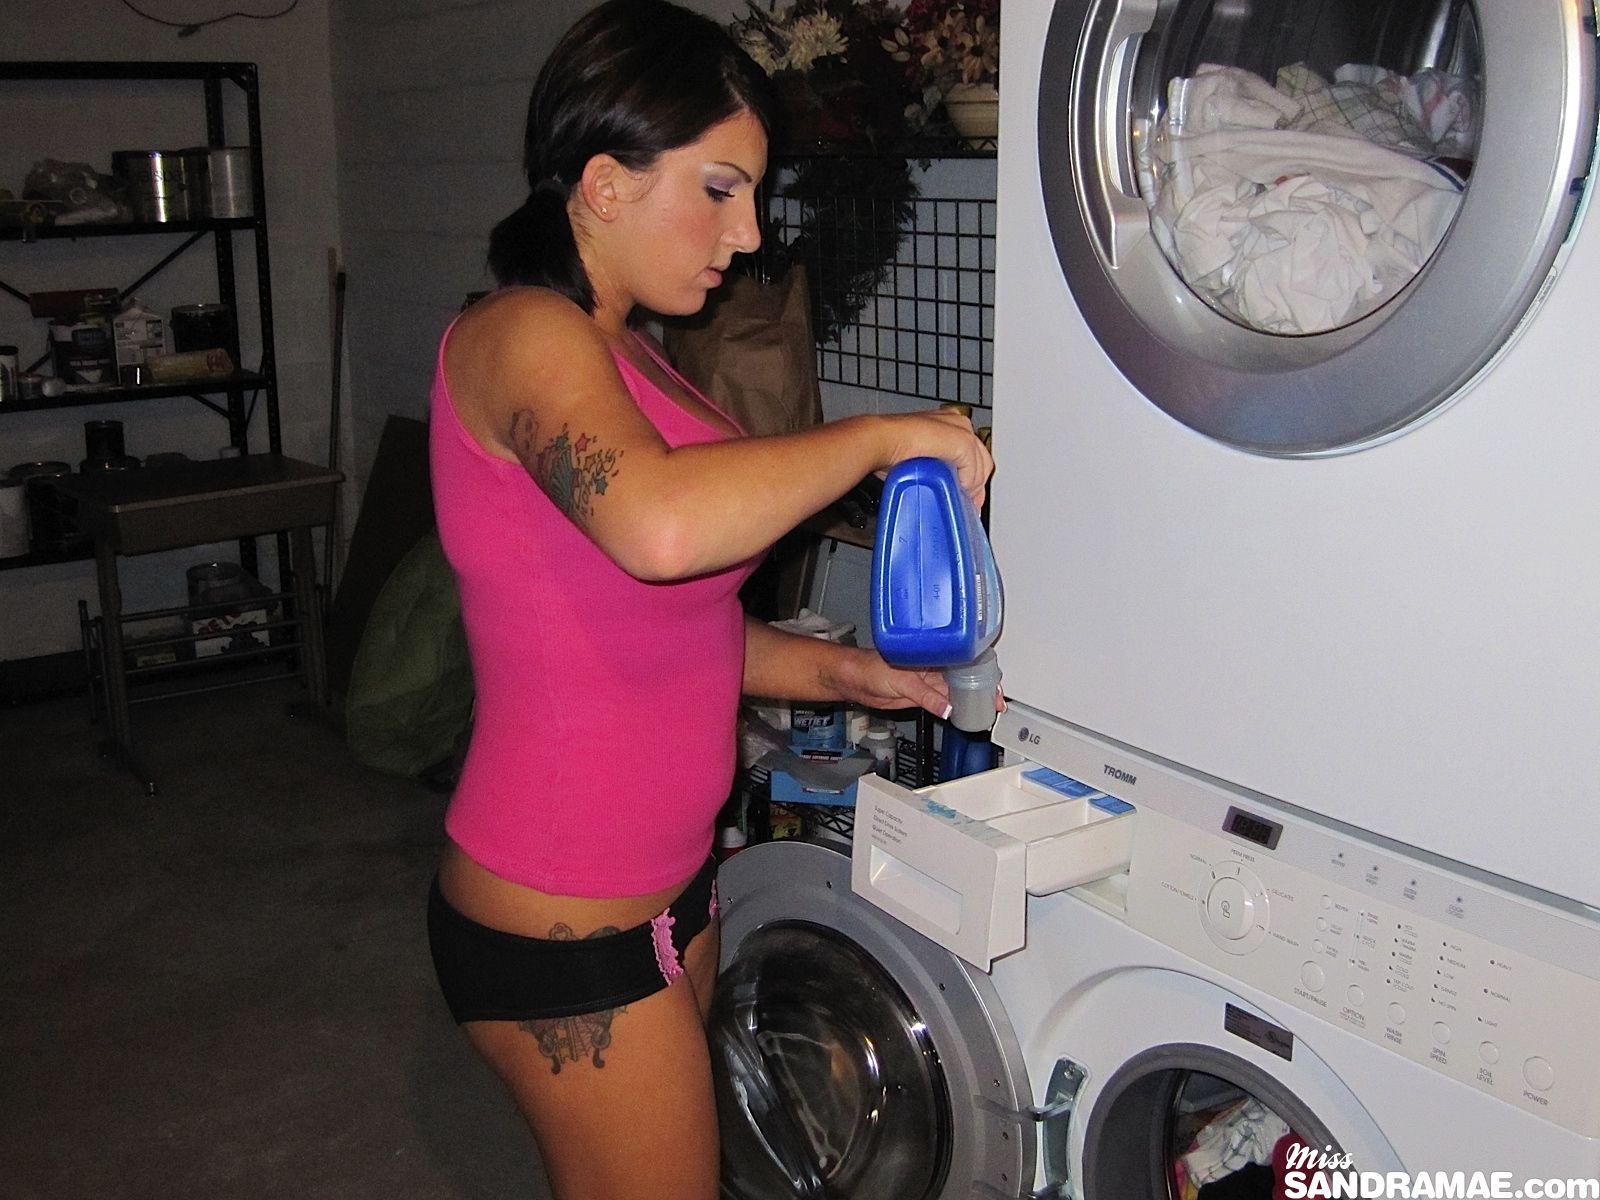 Bilder von teen cutie miss sandra mae getting naughty on laundry day
 #59901505